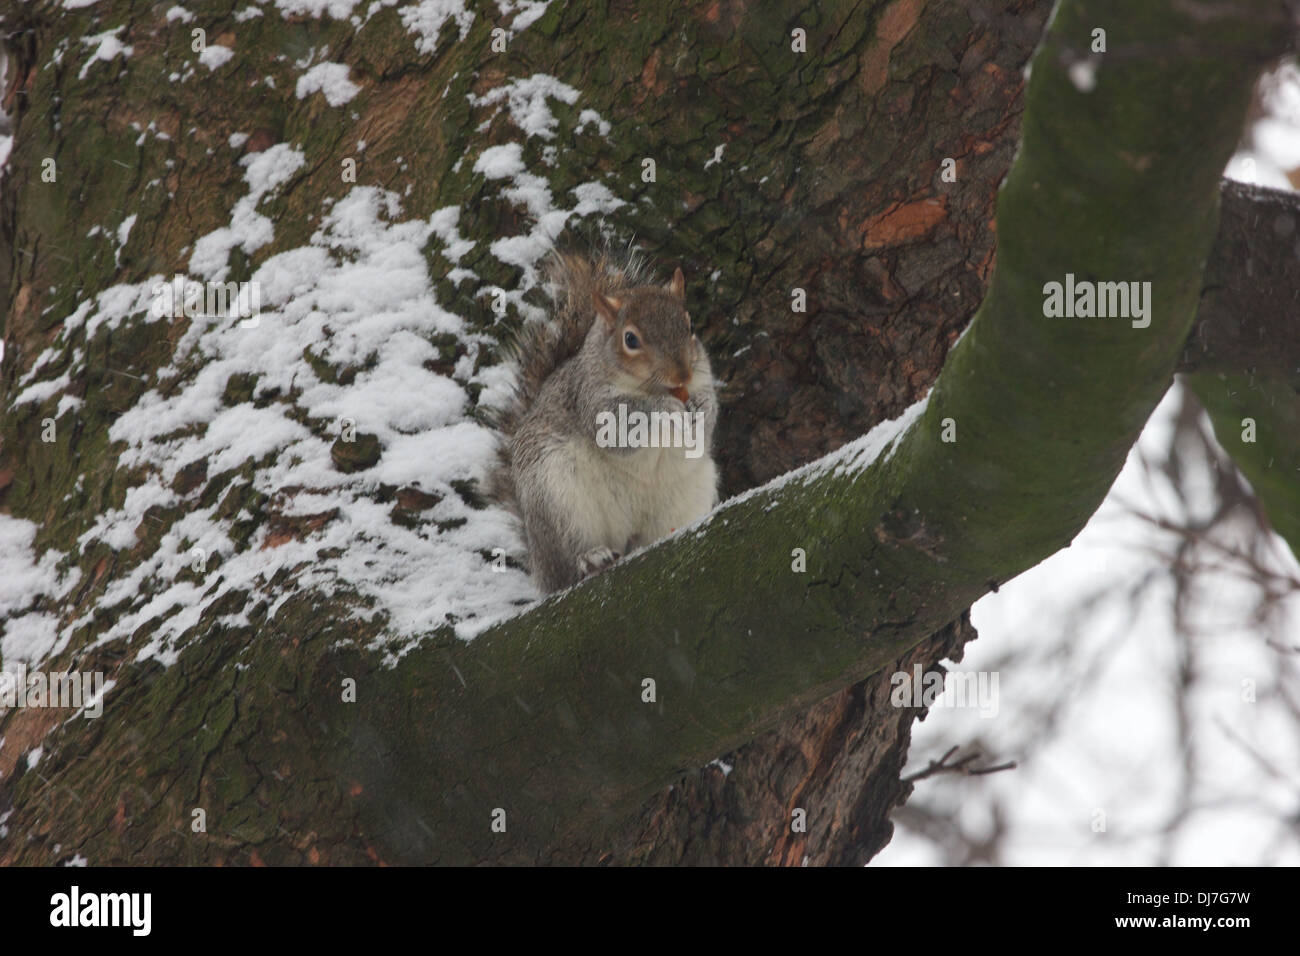 Un écureuil est assis sur une branche d'arbre dans la neige de manger une noix, sa fourrure gonflée contre le froid Banque D'Images